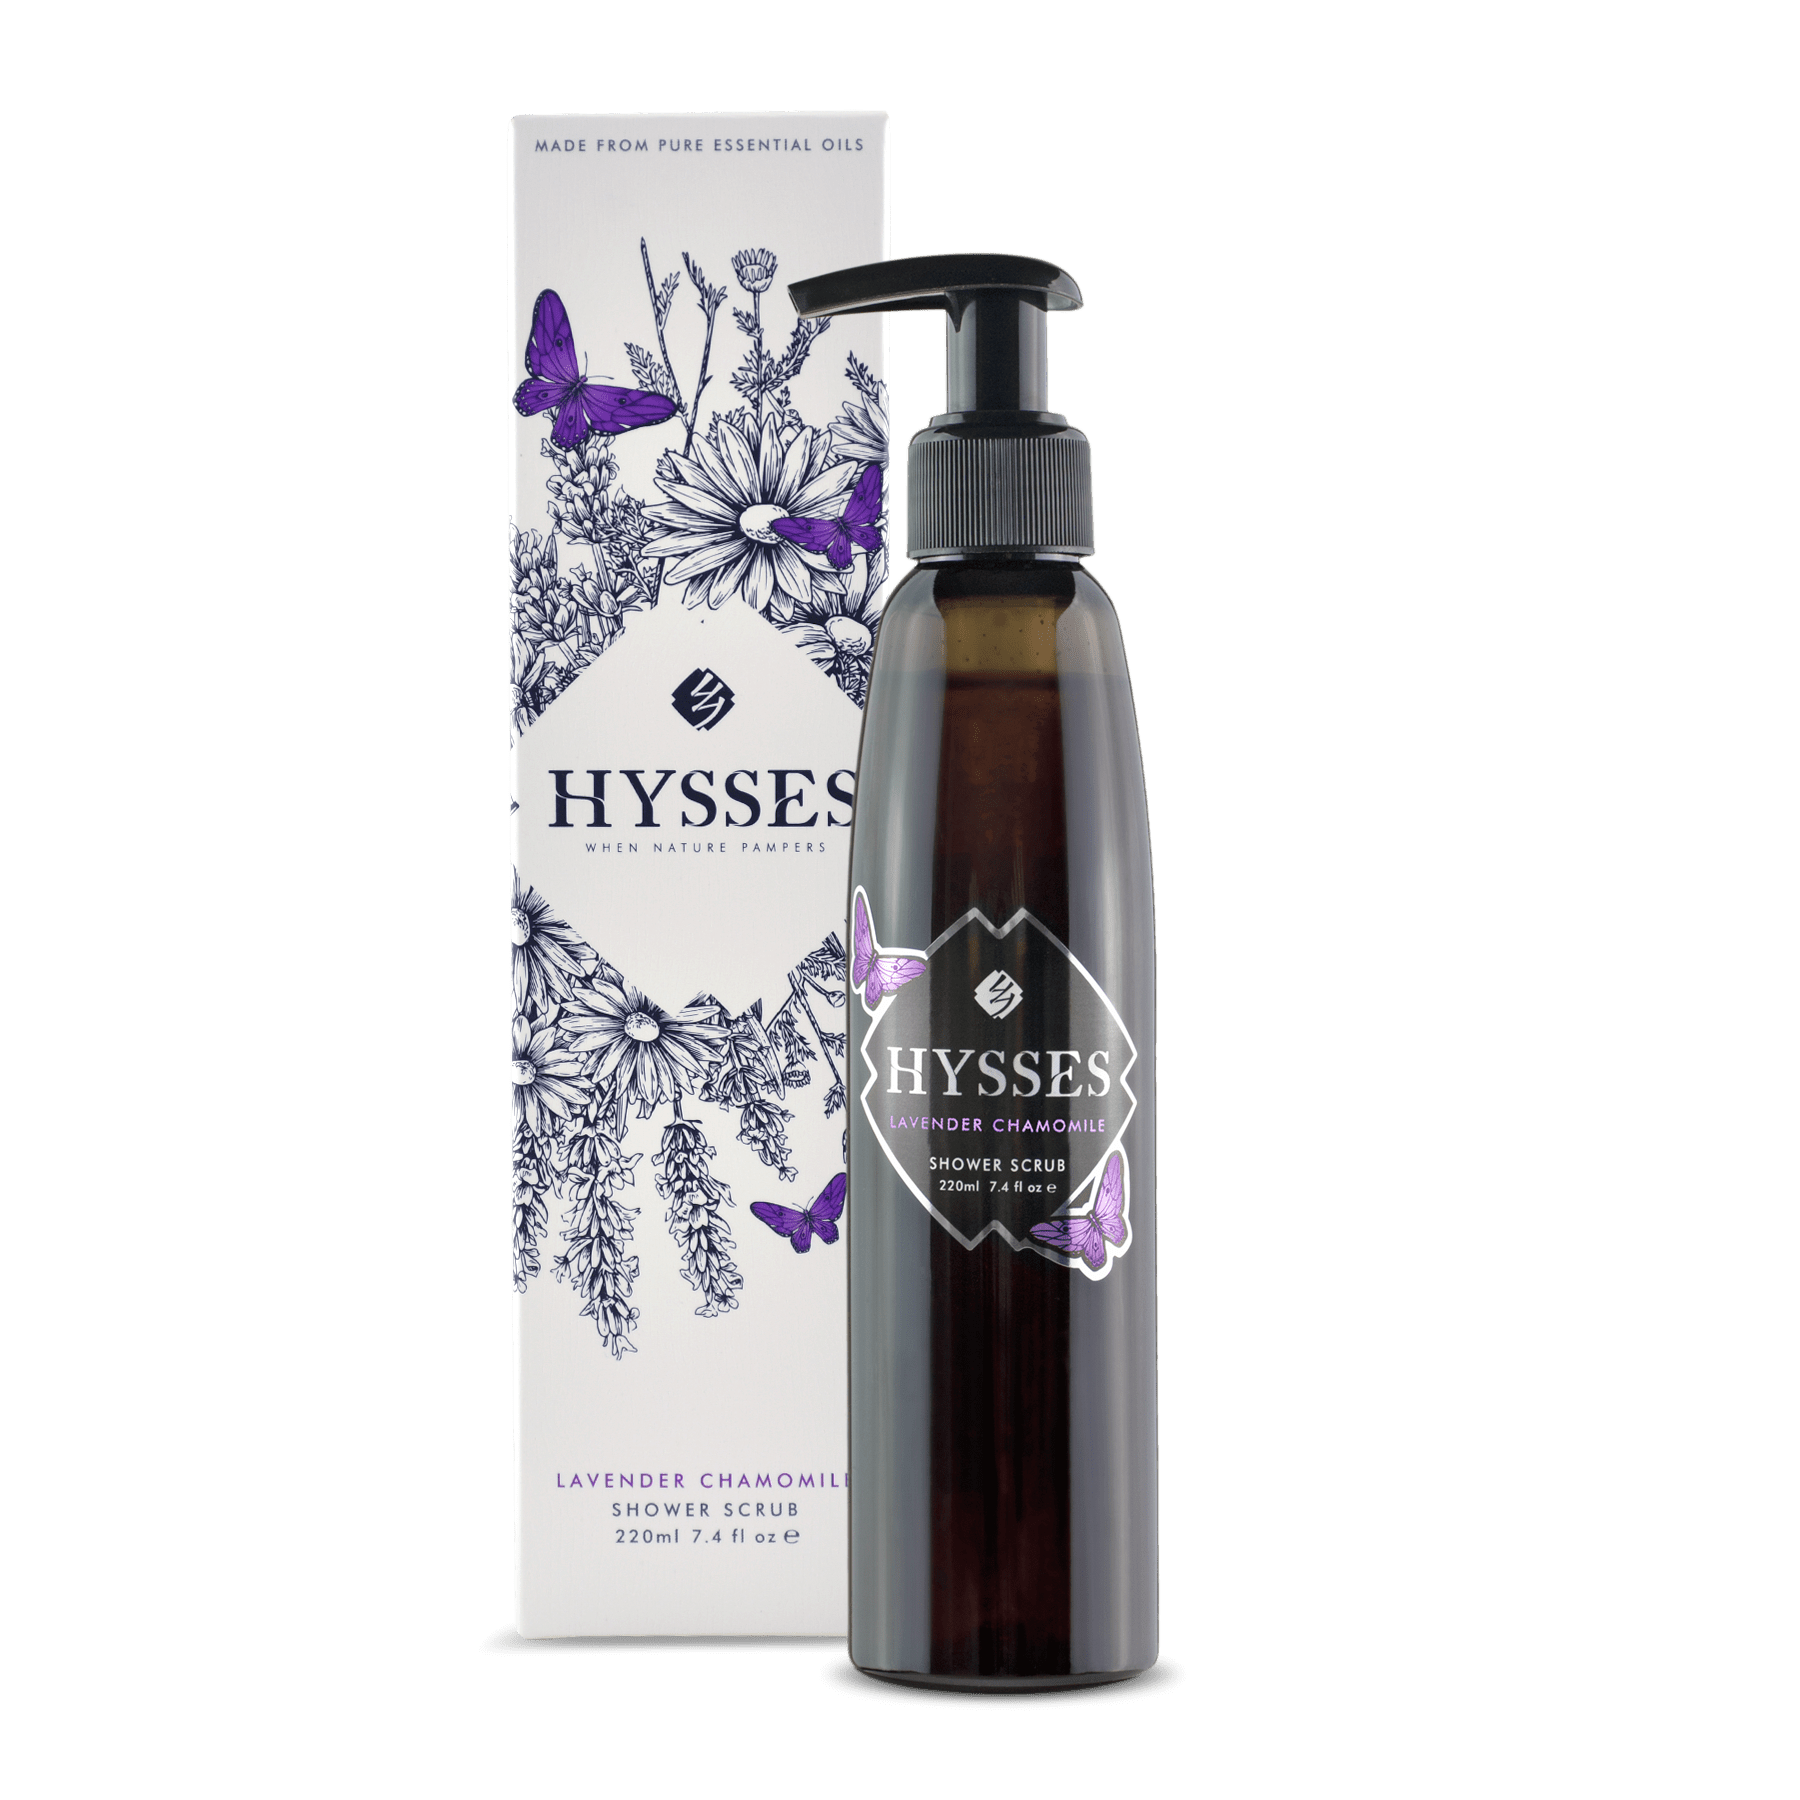 Hysses Body Care 220ml Shower Scrub Lavender Chamomile